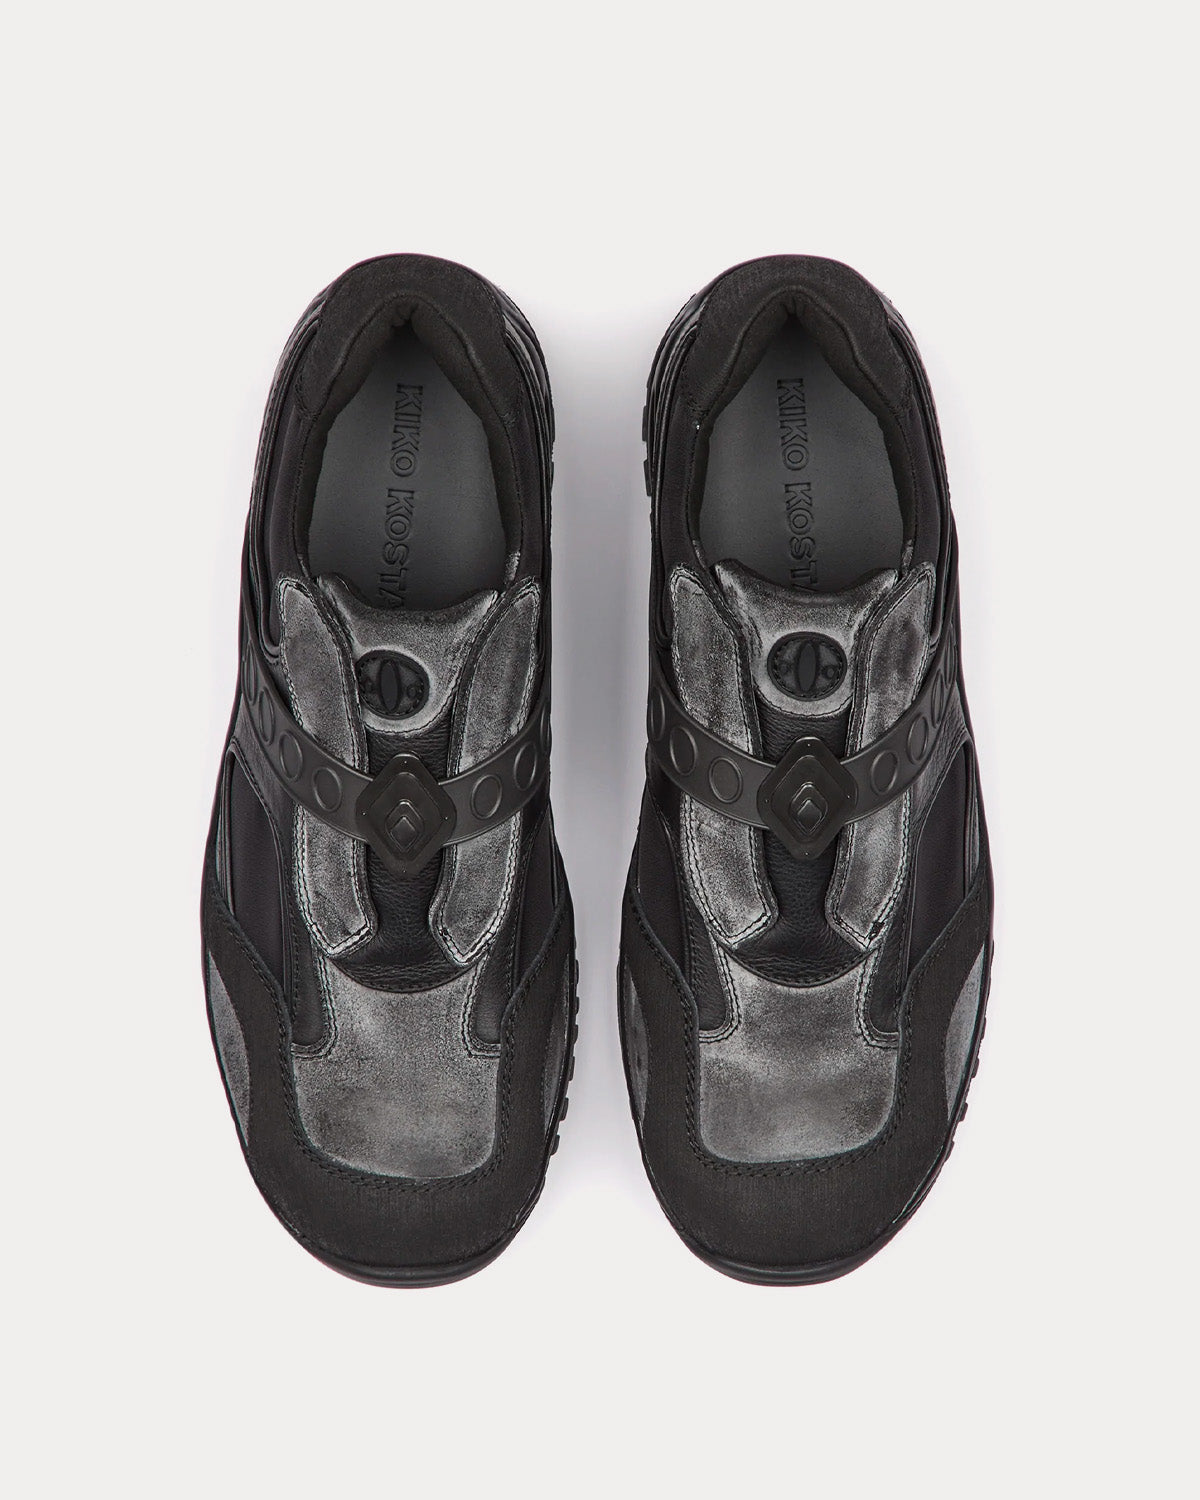 Kiko Kostadinov Antharas Obsidian Slip On Sneakers - Sneak in Peace